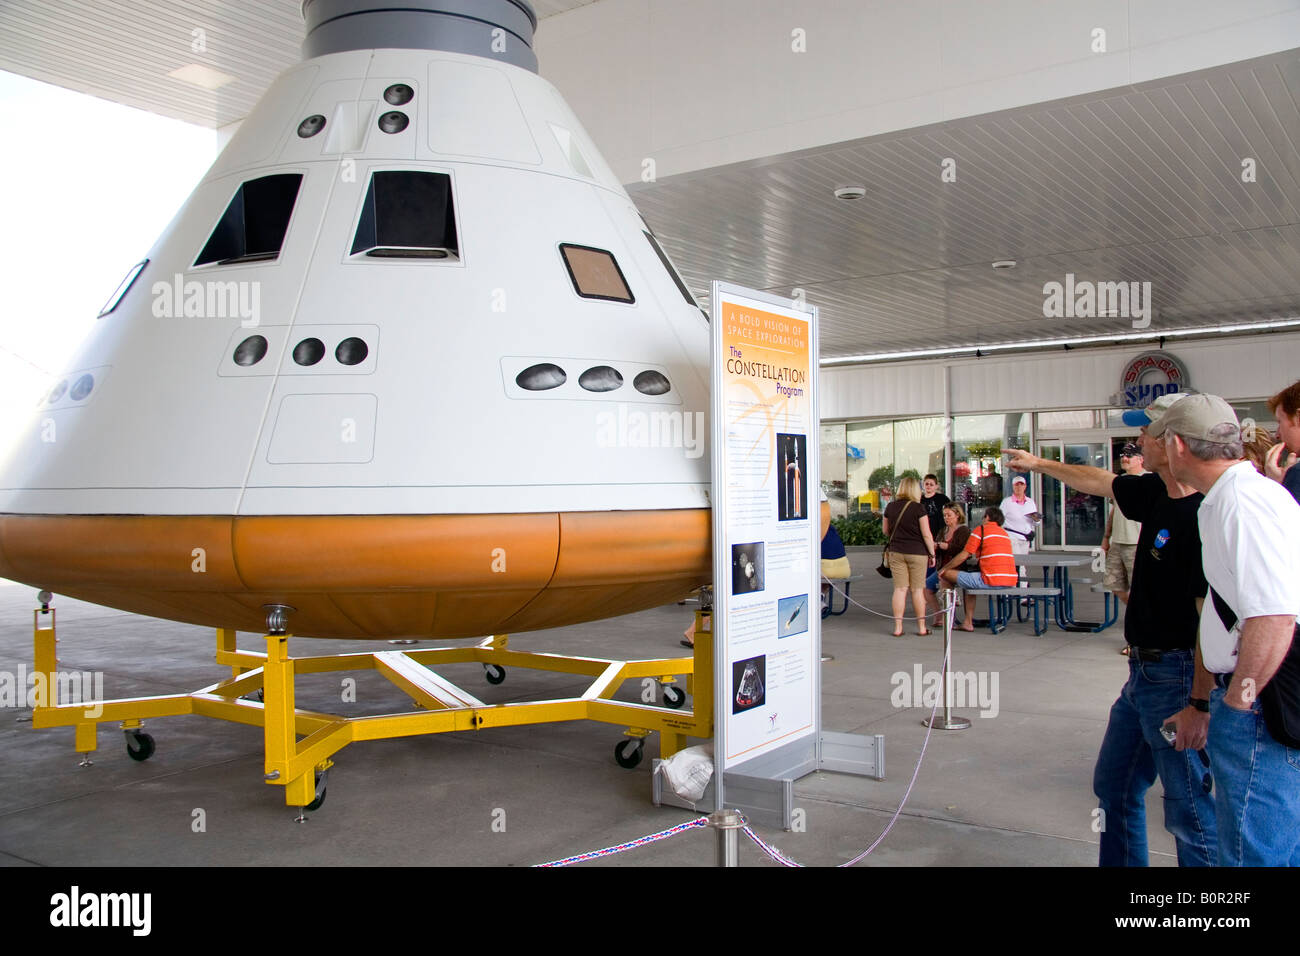 Modello del veicolo spaziale Orion al Complesso Visitatori del Centro Spaziale Kennedy a Cape Canaveral Florida Foto Stock